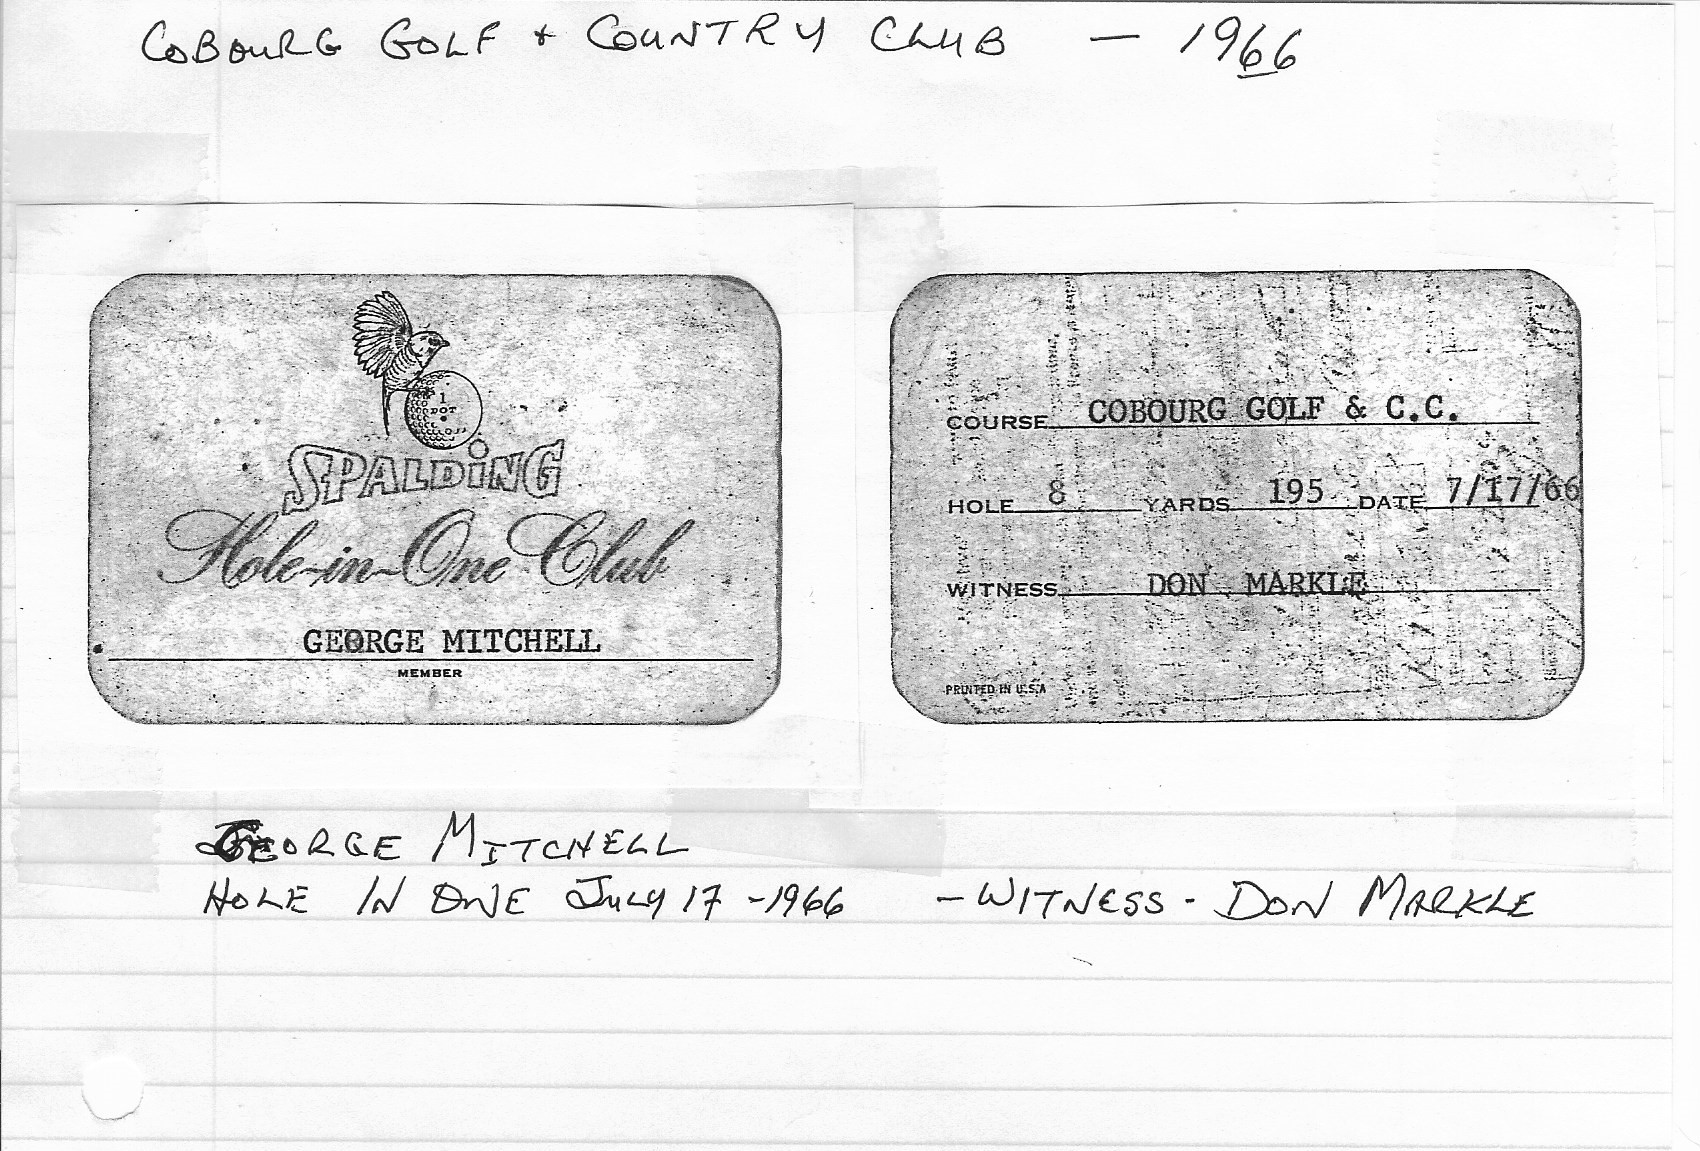 1966-07-17 Golf -George Mitchell Hole-in-One Club Card